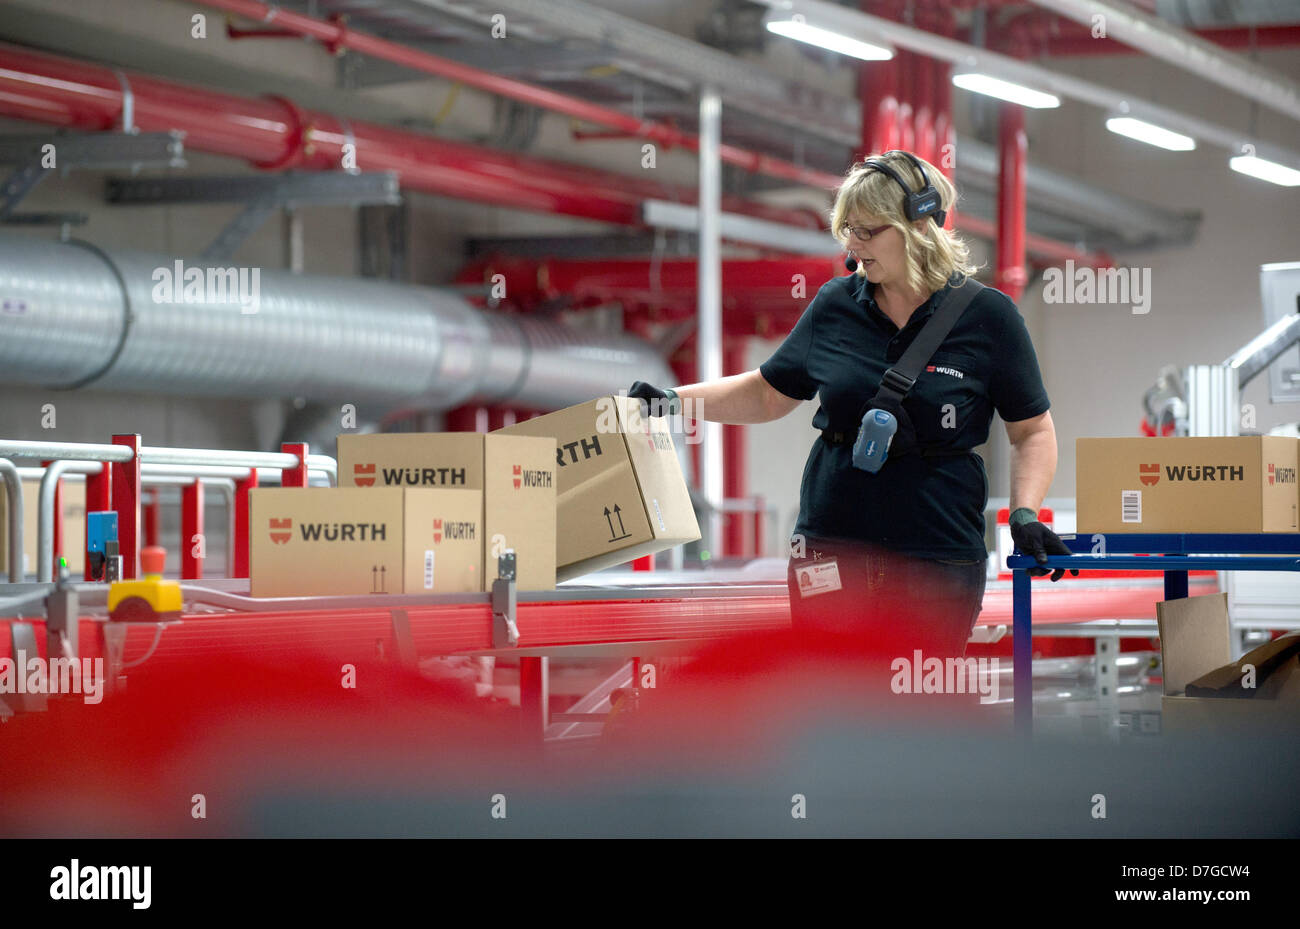 Ein Mitarbeiter der Wuerth-Gruppe arbeiten in der Stimme betrieben Auftragszentrum im Logistikzentrum in Künzelsau, Deutschland, 7. Mai 2013. Wuerth erwartet einen leichten Anstieg im Umsatz in diesem Jahr trotz der anhaltenden Wirtschaftskrise. Foto: MARIJAN MURAT Stockfoto